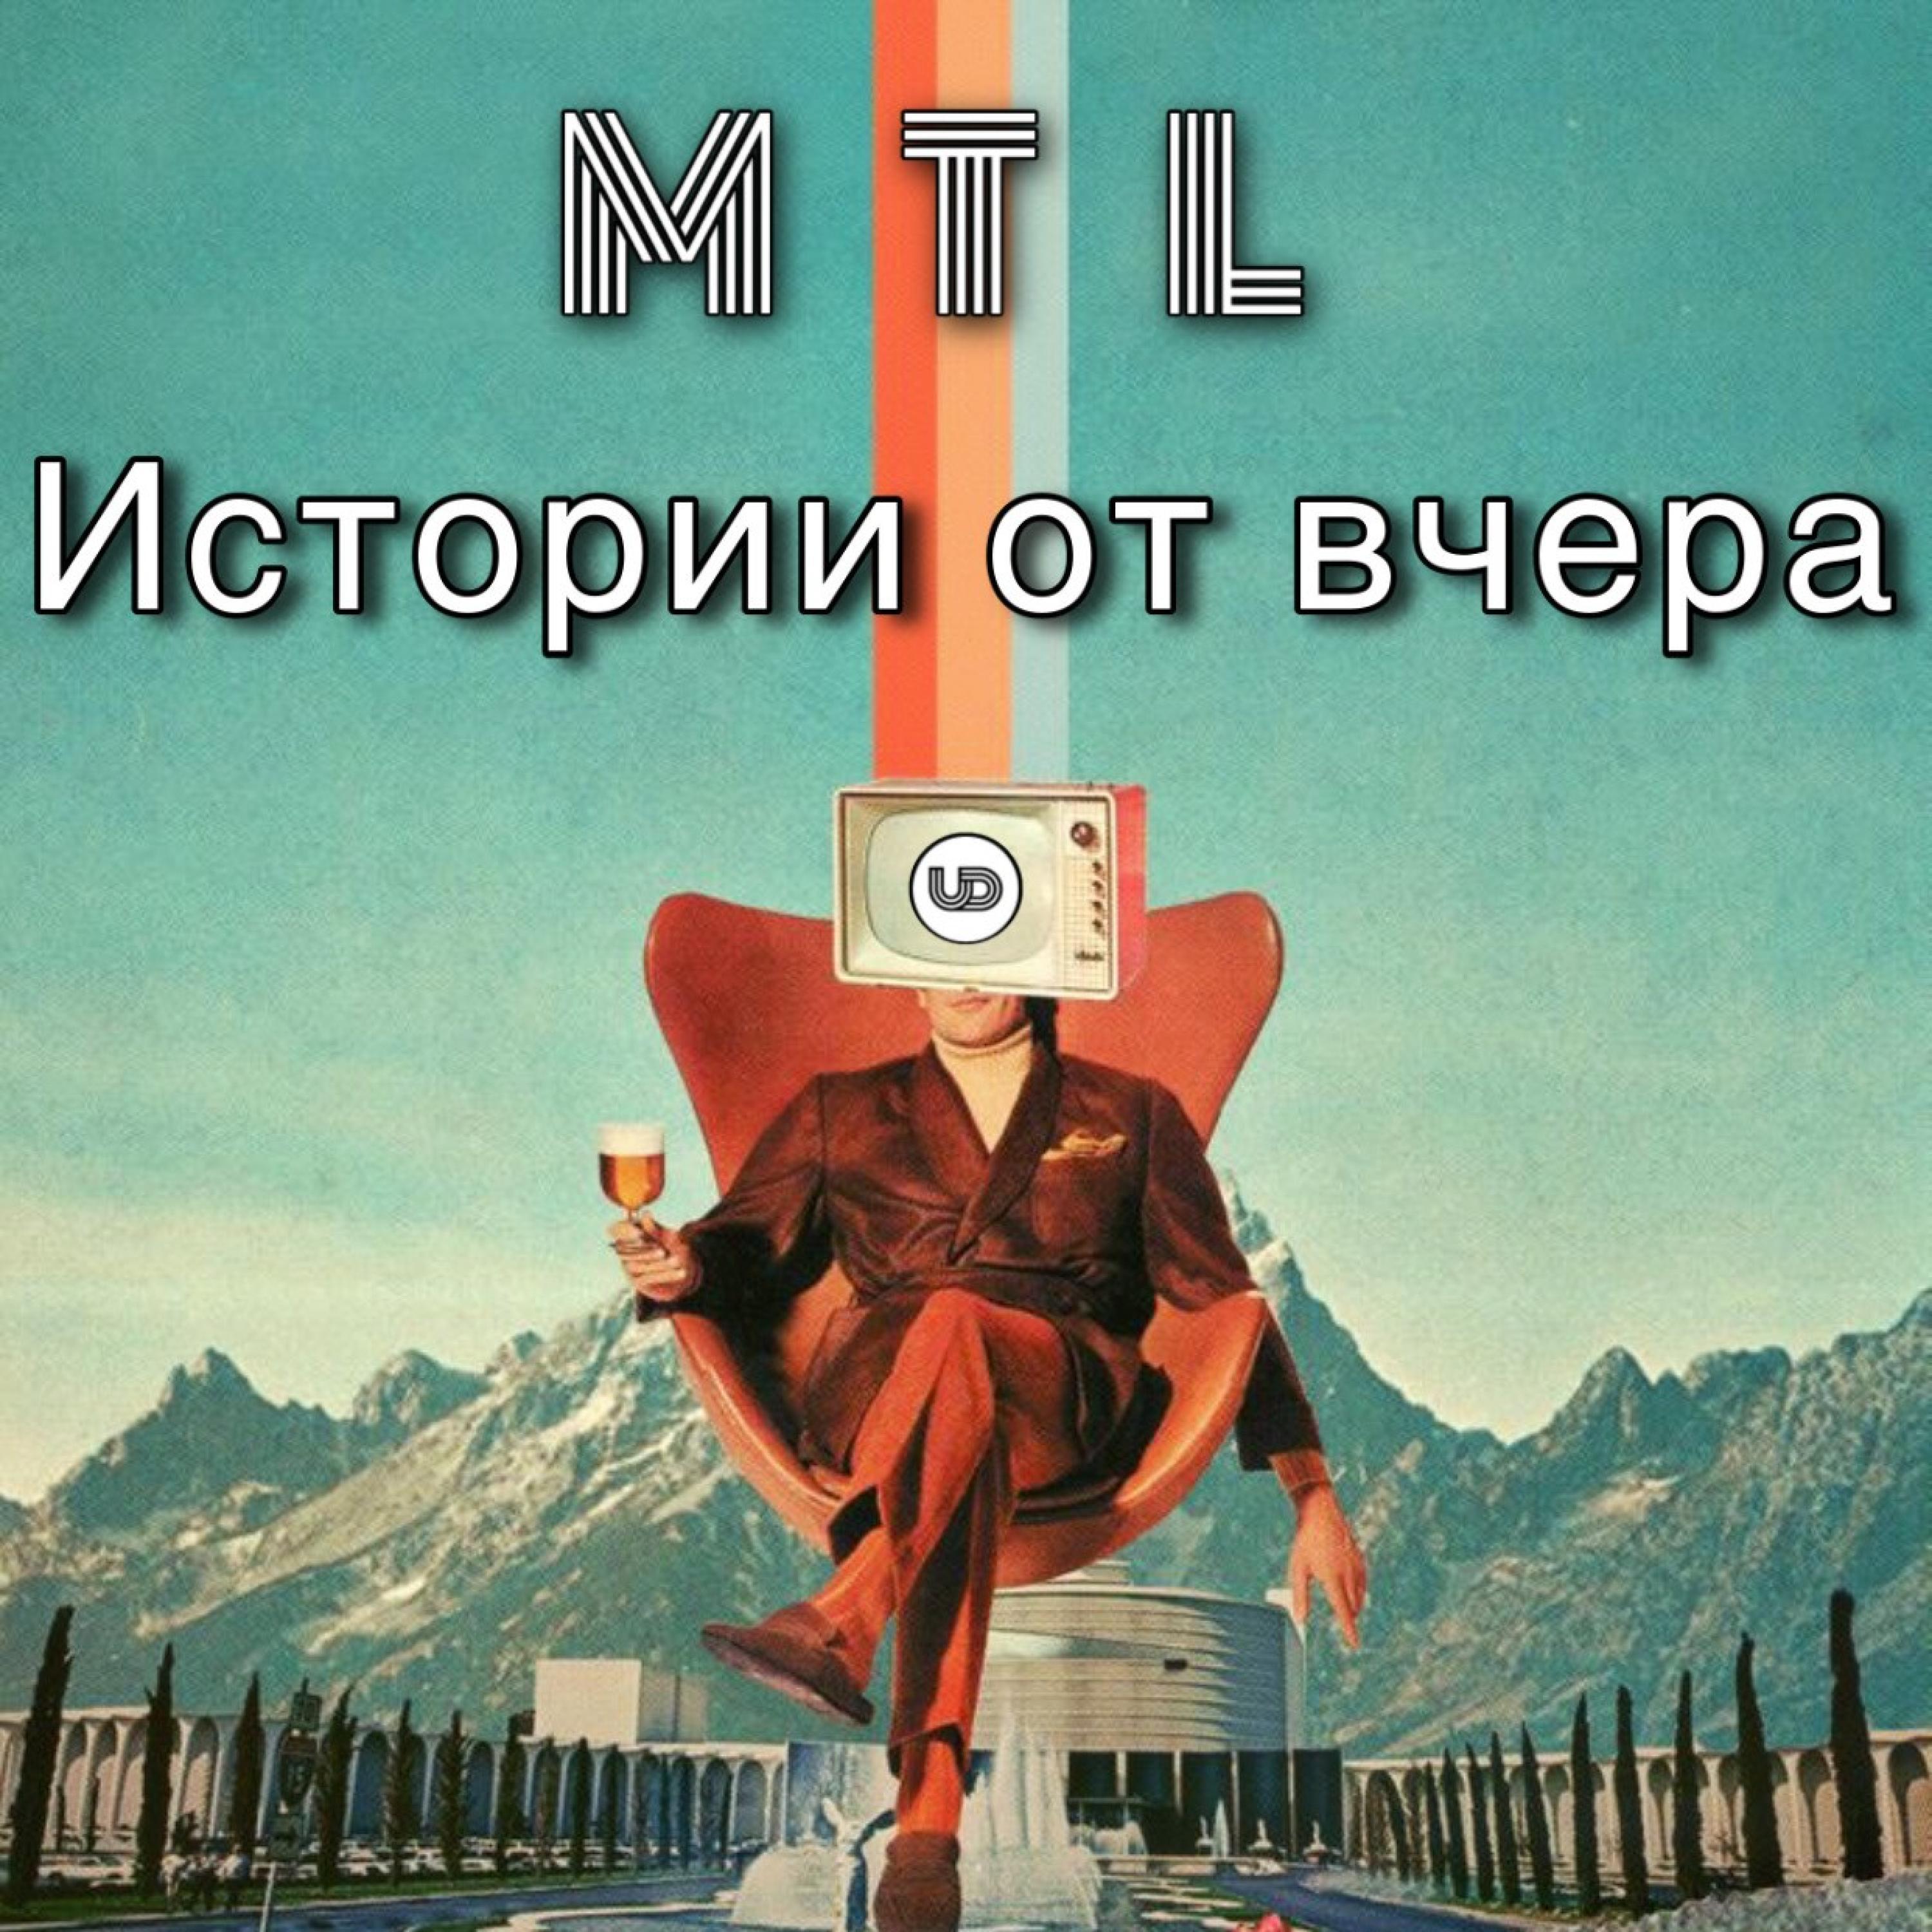 MTЛ - Mitiovshtina